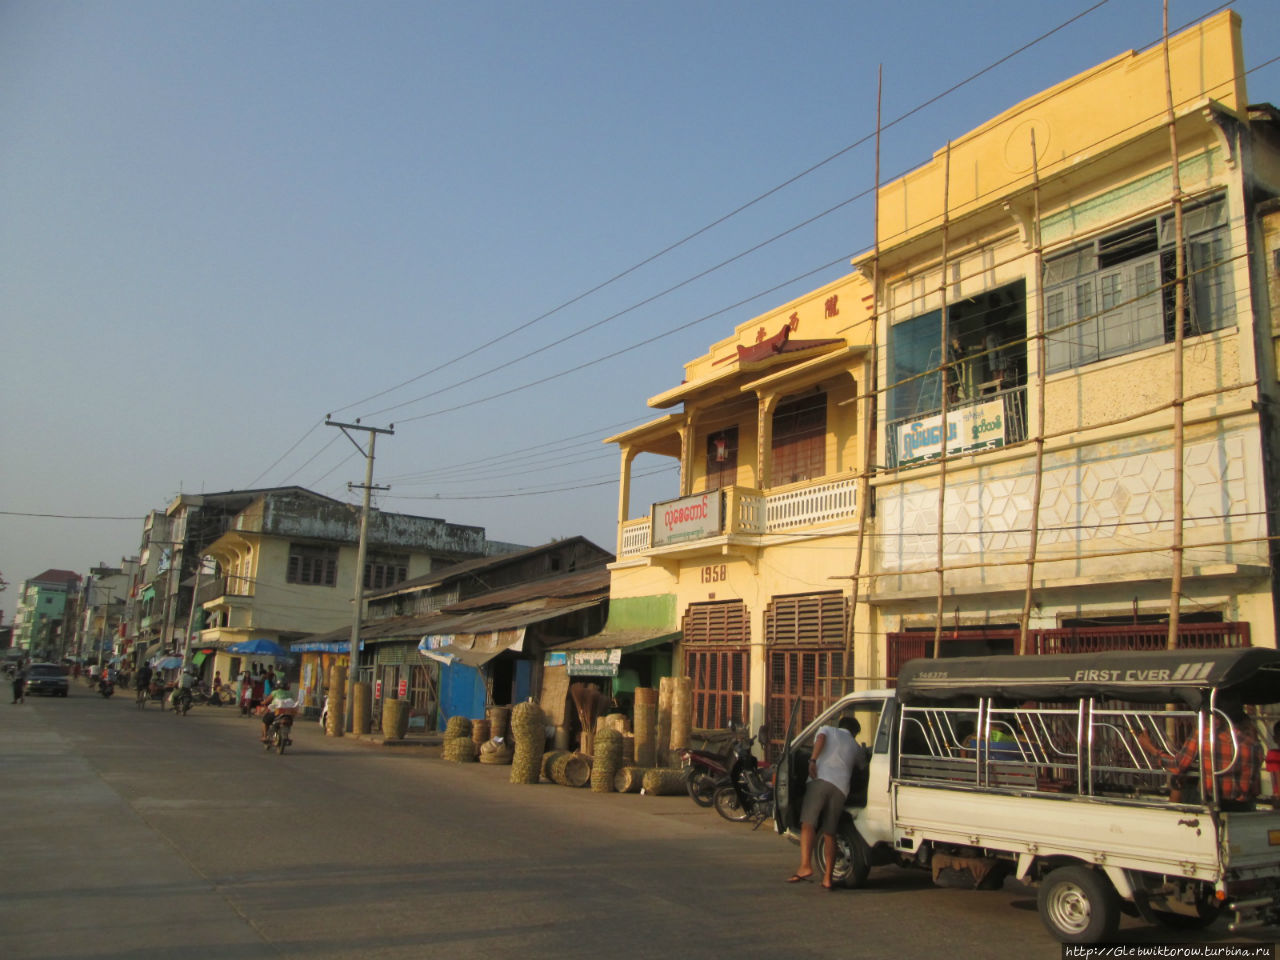 Пешком по центру города до мэрии Патейн, Мьянма